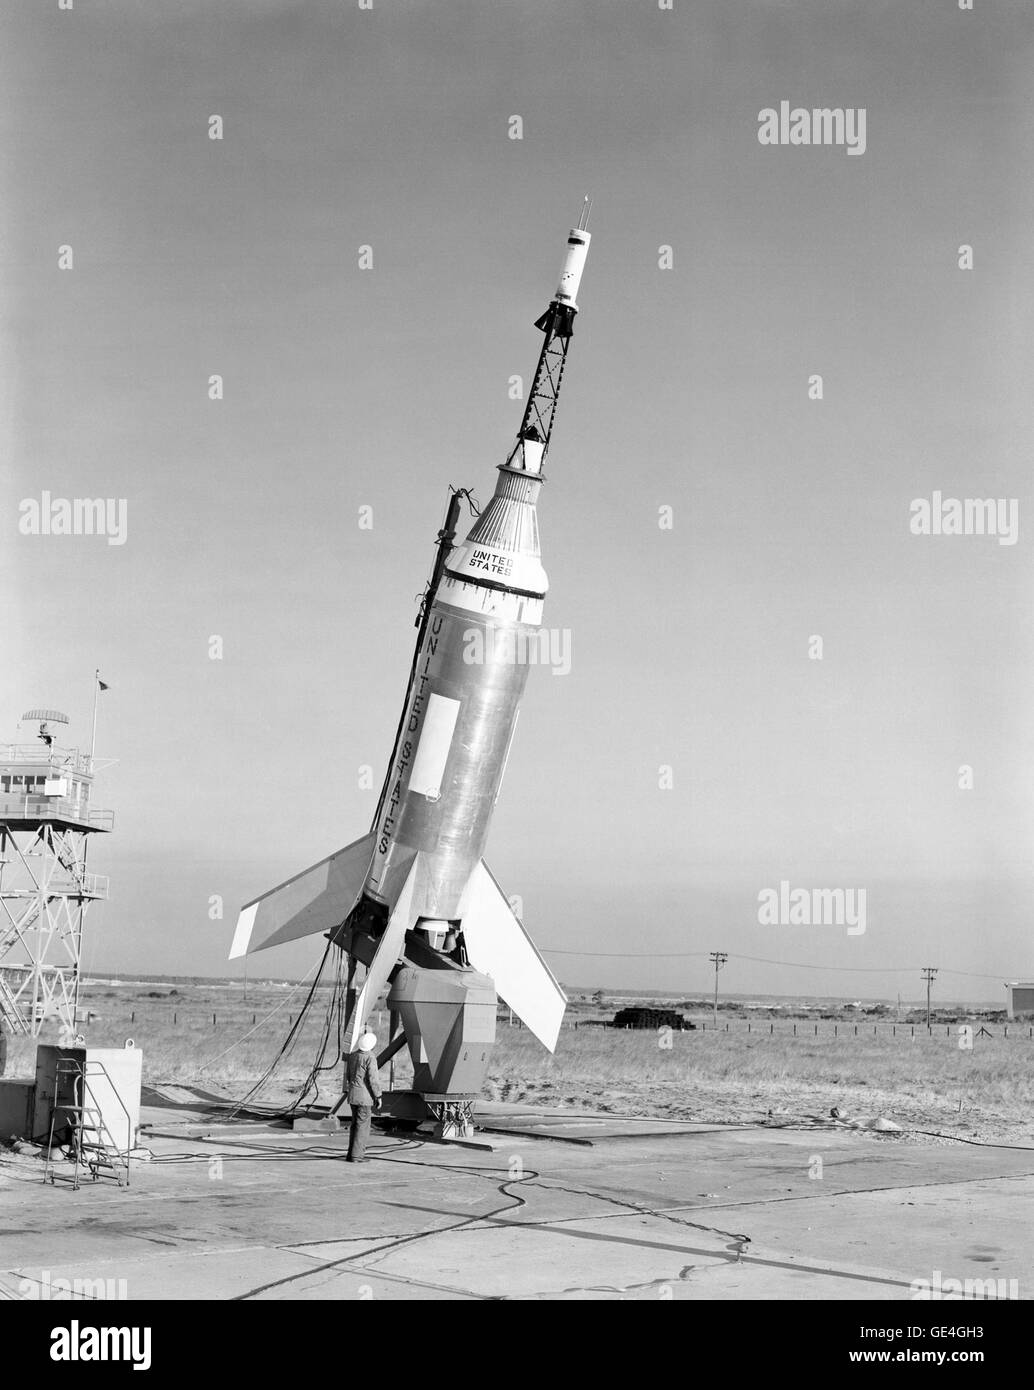 Lancio della Little Joe di veicoli di lancio il 4 novembre 1959 ha avuto luogo a Wallops Island, Va. questo è stato il primo tentativo di lanciare una capsula con ruota fonica integrata con un po' di Joe booster. Solo le stampanti LJ1A e LJ6 utilizzato lo spazio di metallo/chevron piastre come riflettore di calore protezioni, come hanno mantenuto la frantumazione. Little Joe è stato utilizzato per eseguire il test di vari componenti del veicolo spaziale di mercurio, come ad esempio la fuga di emergenza di razzi. Immagine # : L-1960-00104 Foto Stock